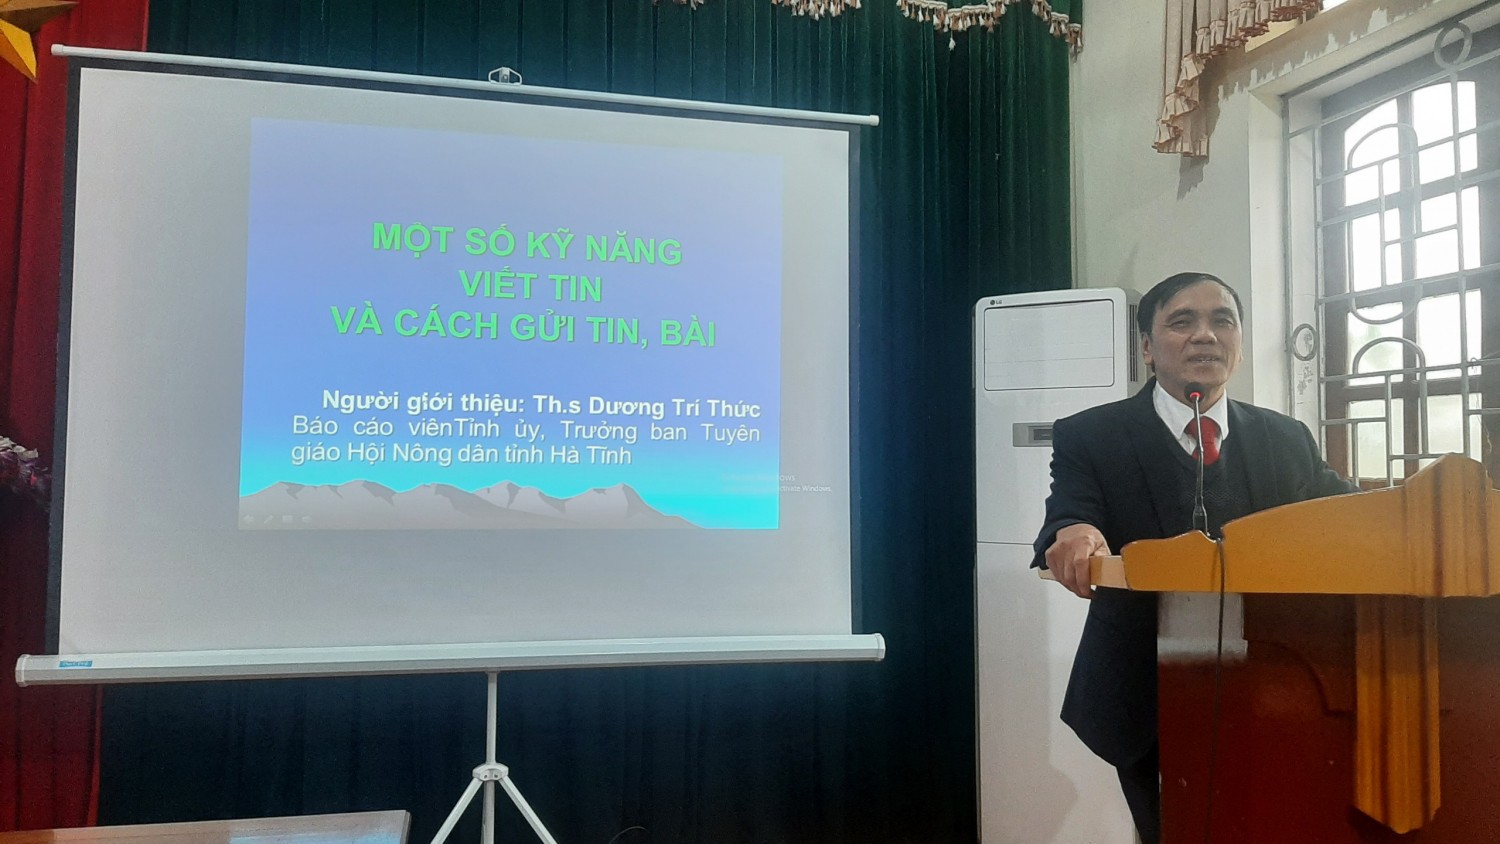 Hội Nông dân huyện Can Lộc tổ chức tập huấn kỹ năng viết tin, bài cho đội ngũ cán bộ Hội cơ sở